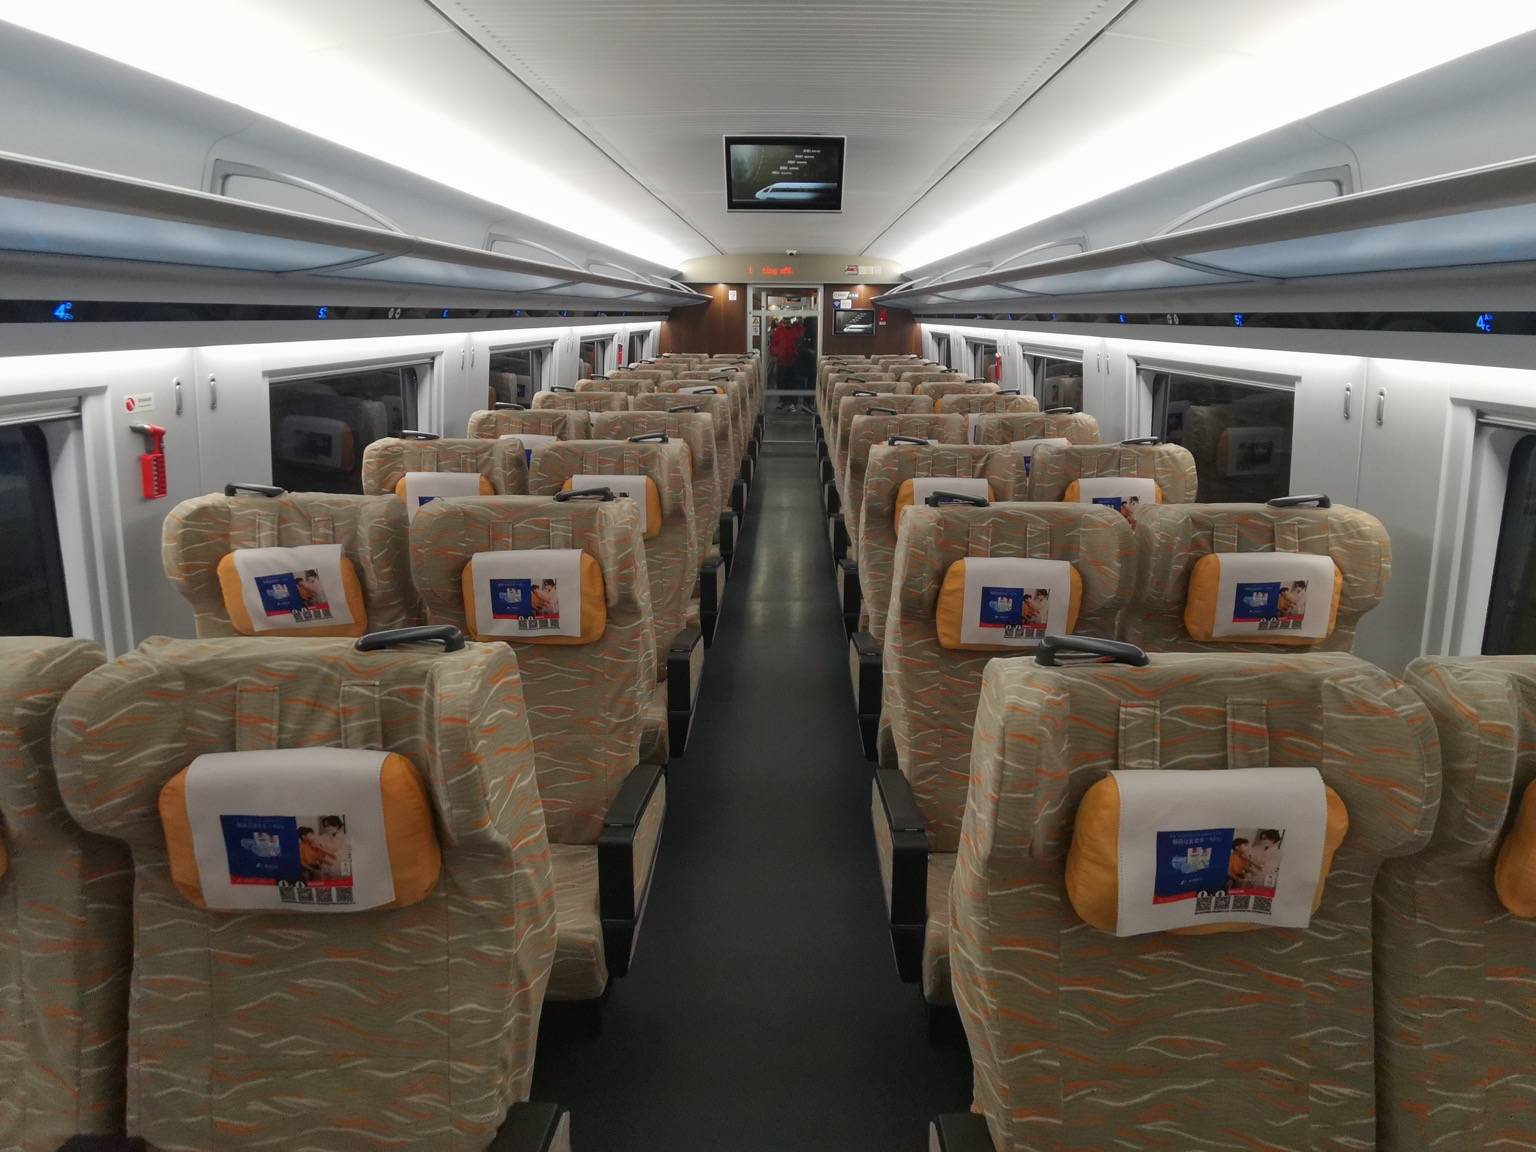 cr300bf型复兴号动车组将在国内首次上线正式落户银西高铁